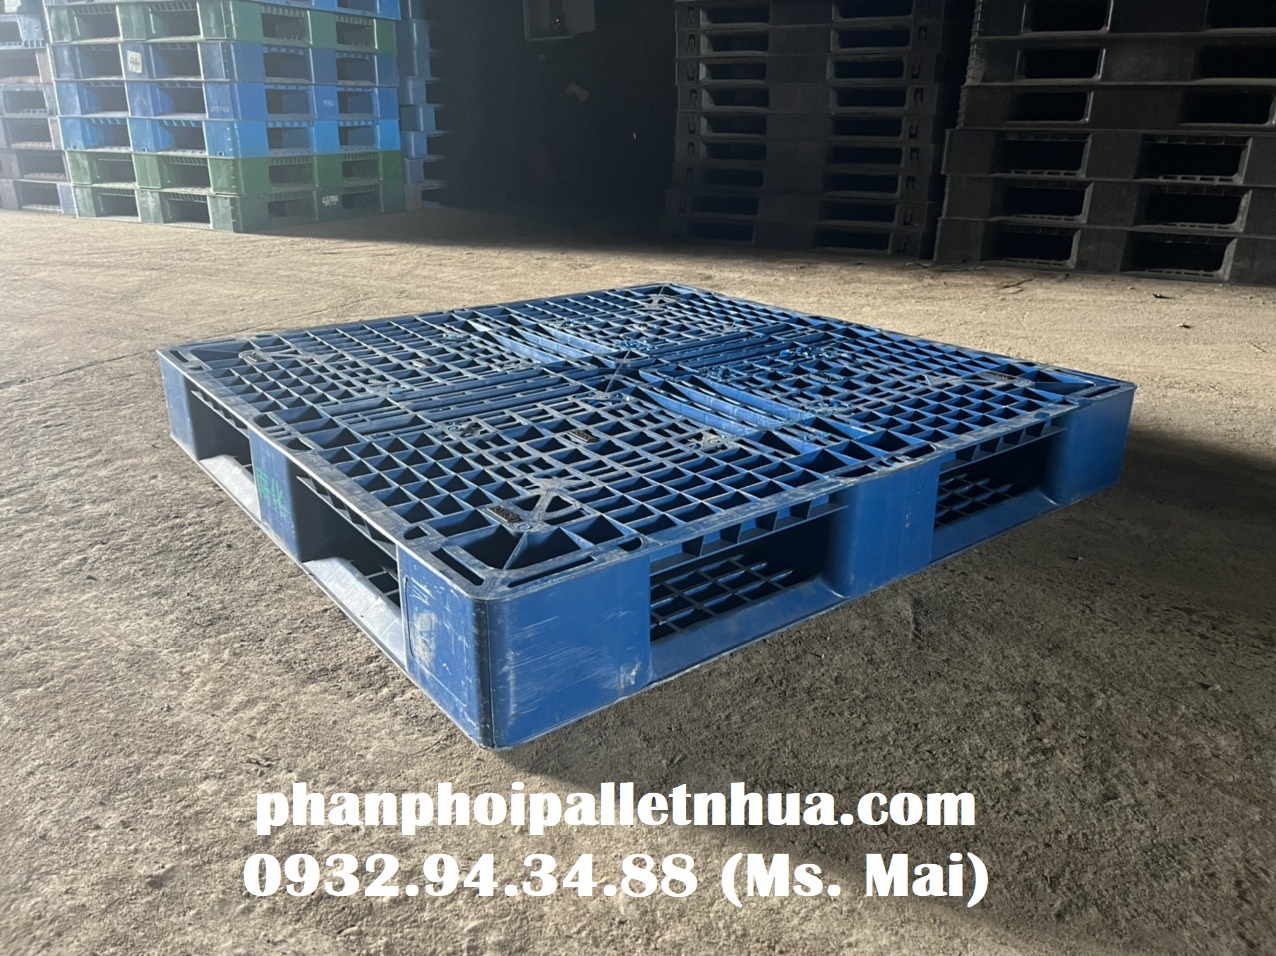 Phân phối pallet nhựa cũ tại Bình Thuận, liên hệ 0932943488 (24/7)